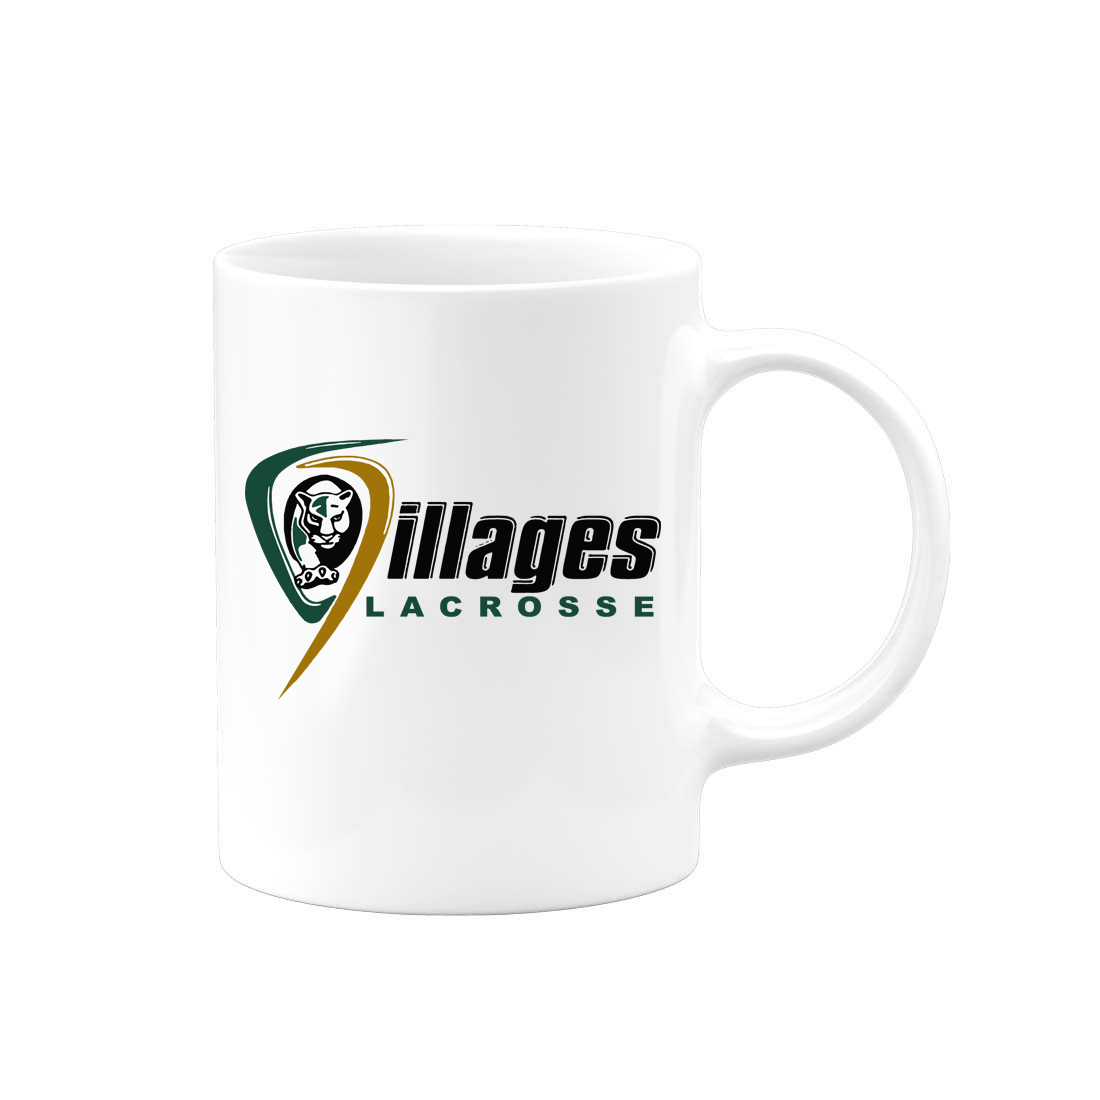 Villages Lacrosse Team Mug